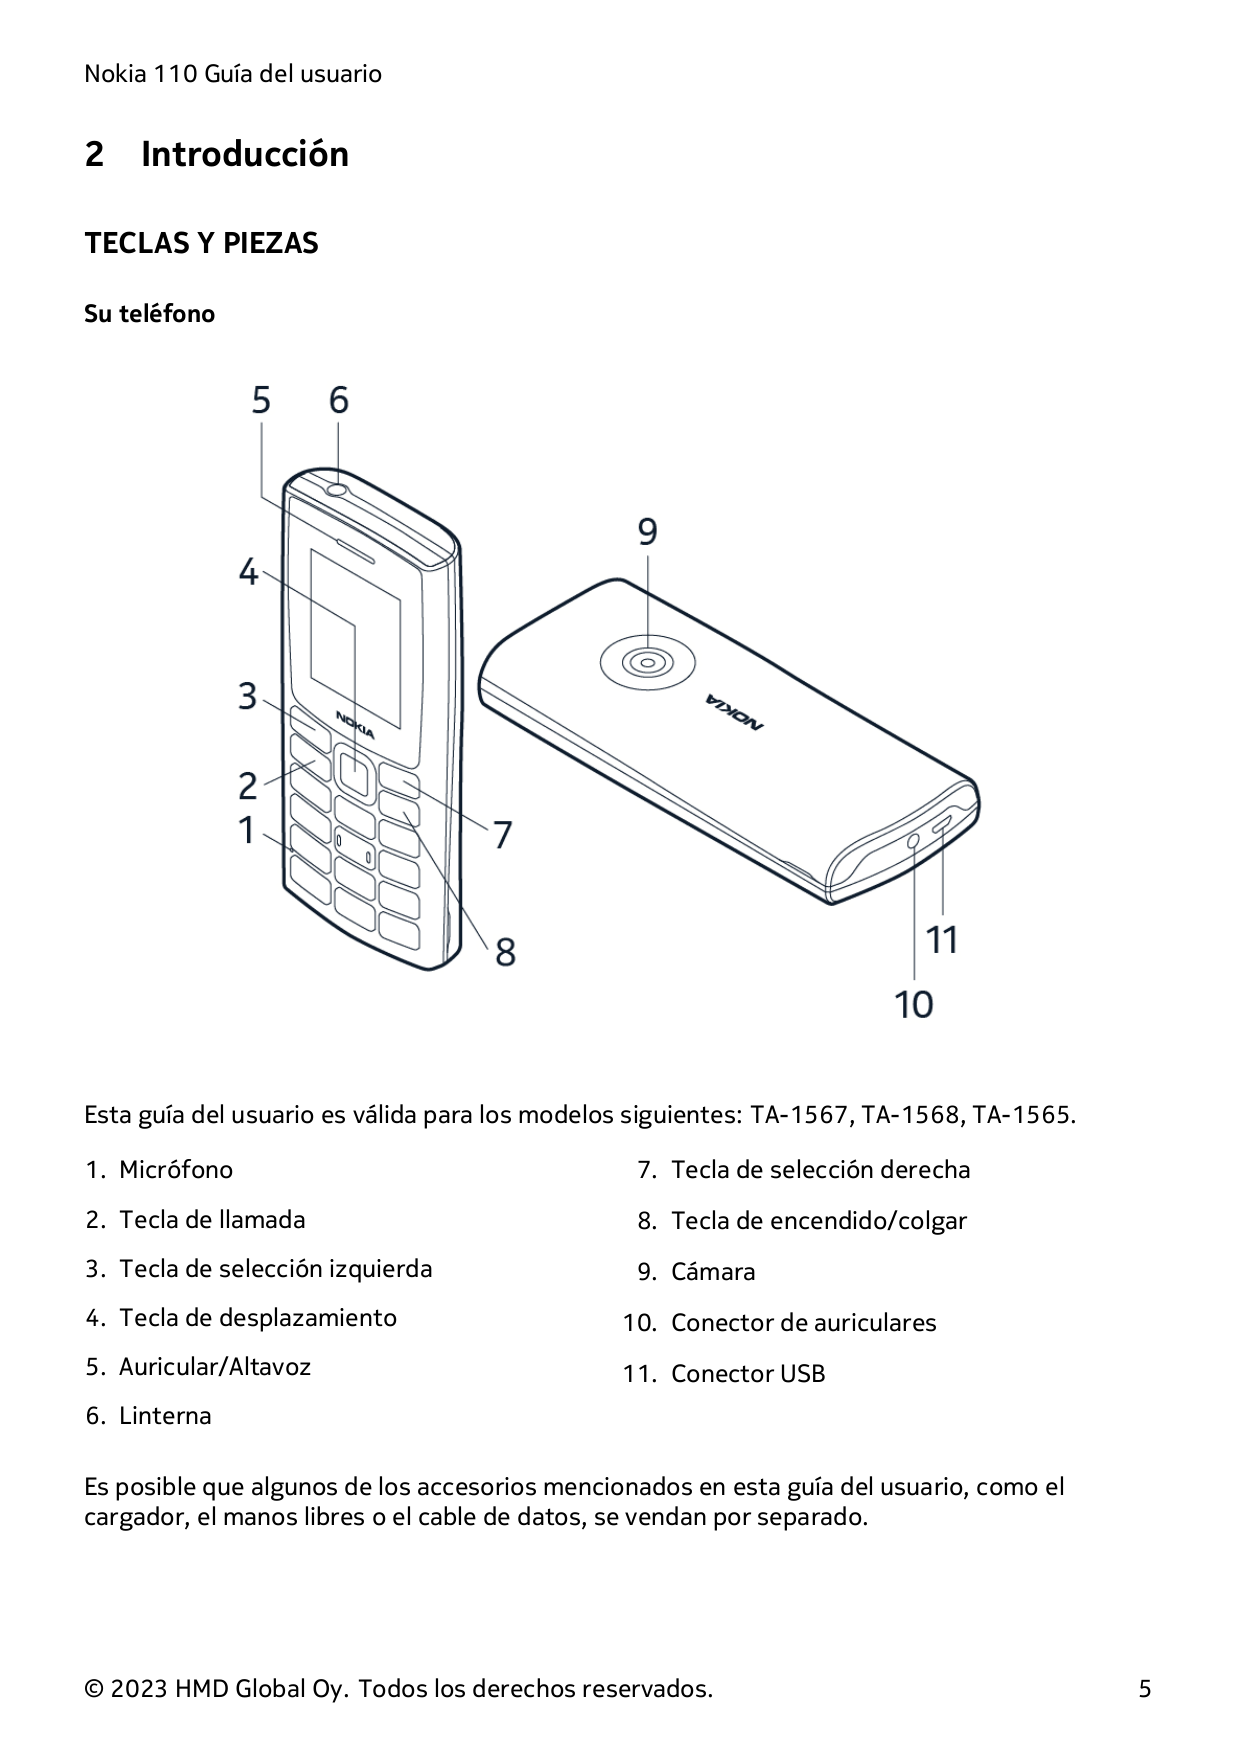 Nokia 110 Guía del usuario2IntroducciónTECLAS Y PIEZASSu teléfonoEsta guía del usuario es válida para los modelos siguientes: TA